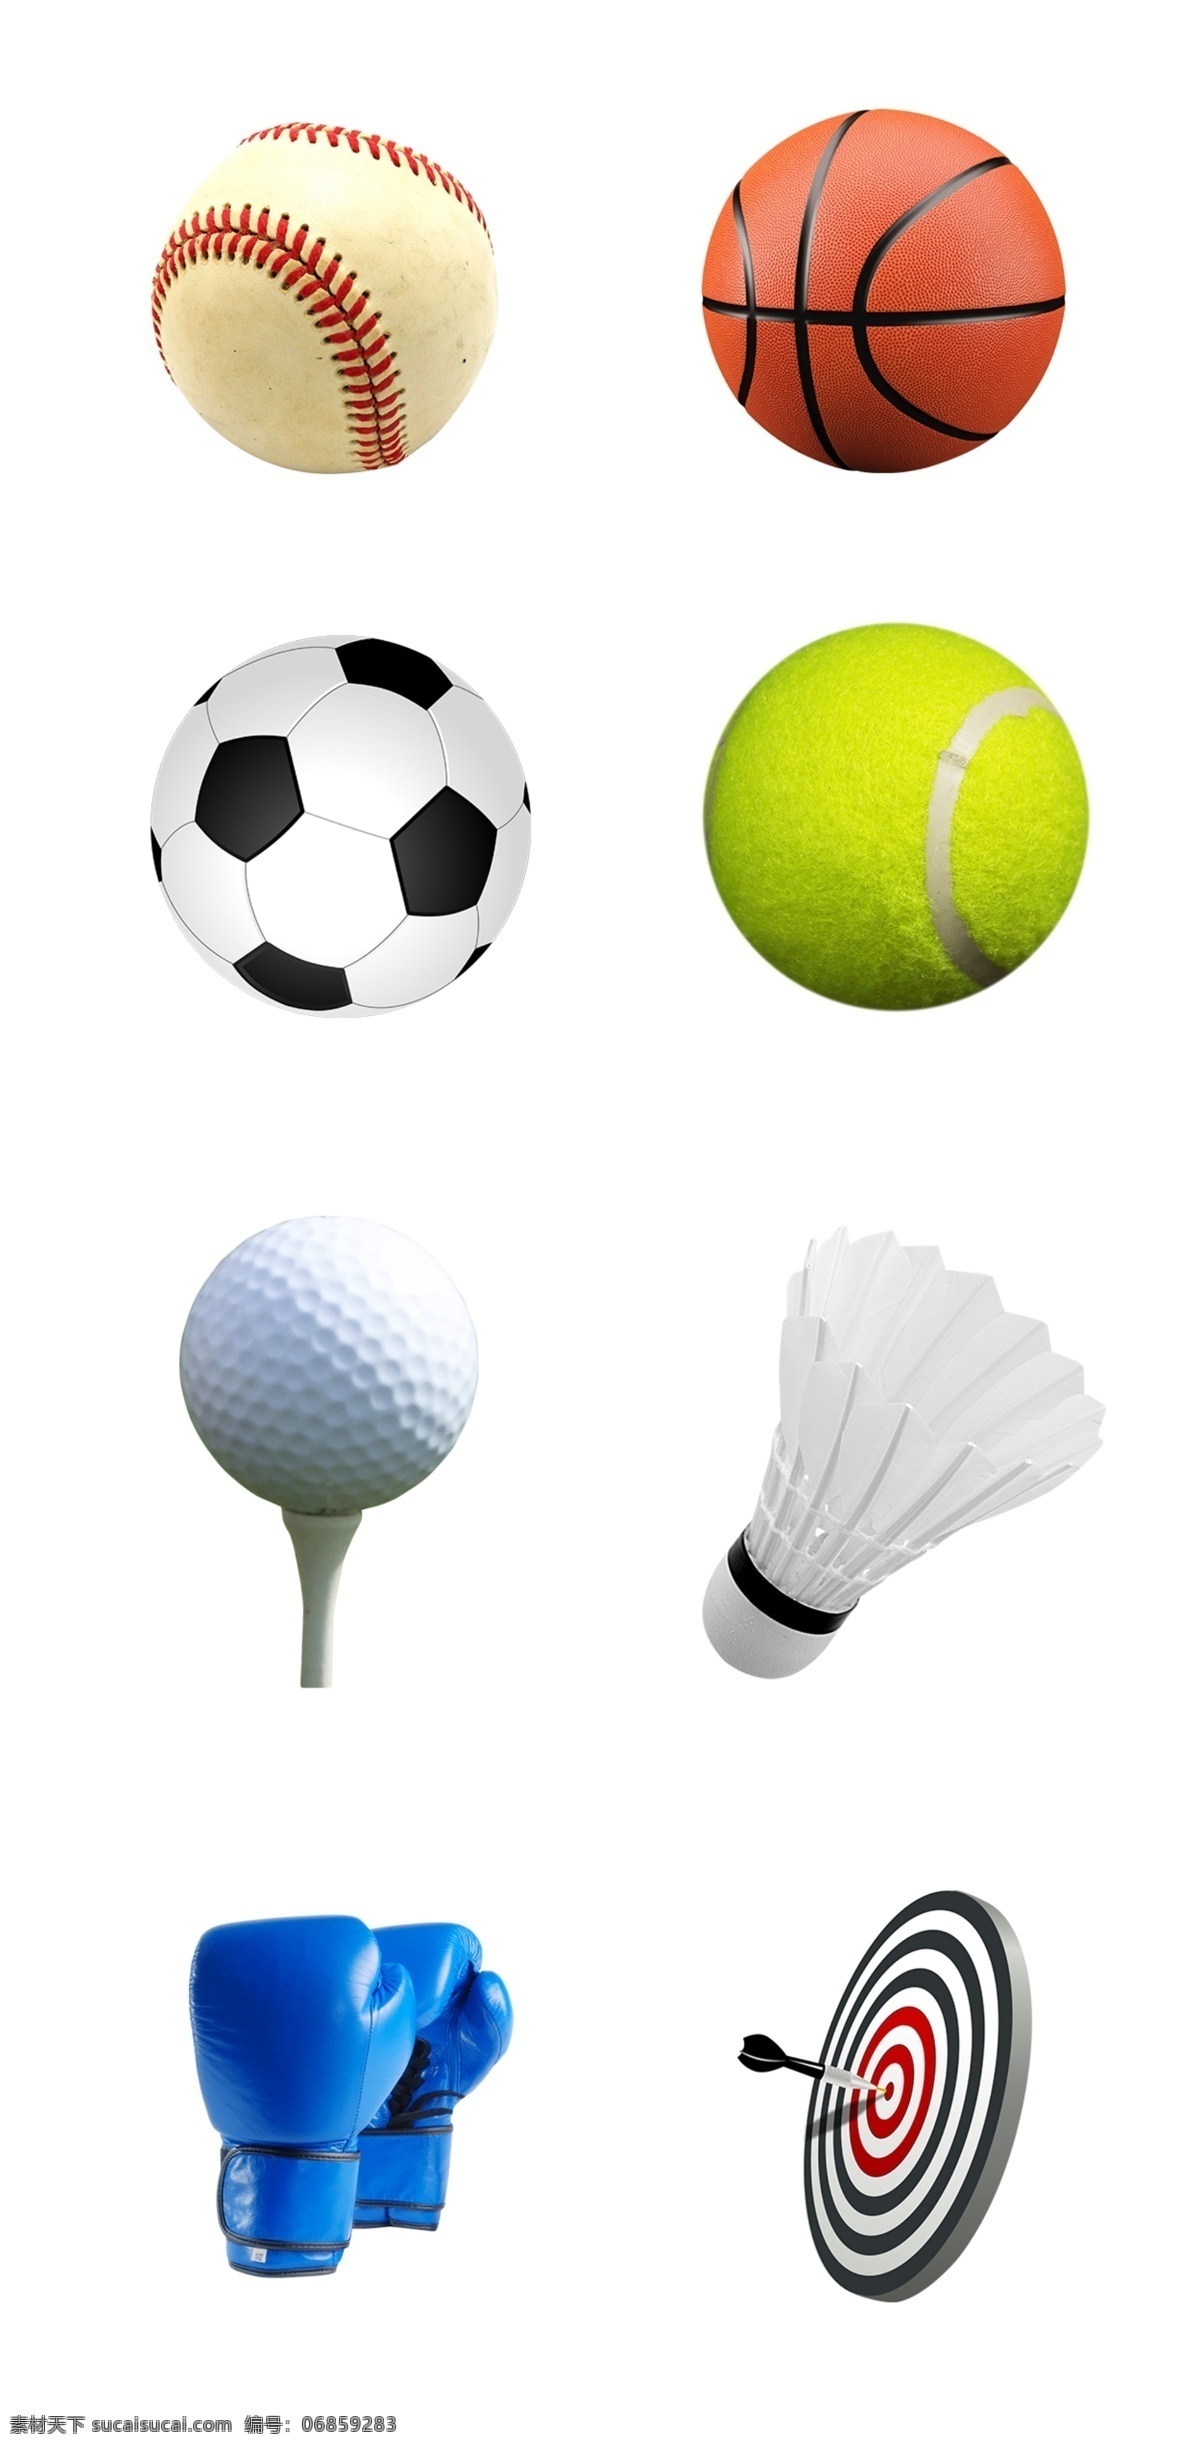 体育用品 分层 篮球 棒球 足球 网球 高尔夫球 羽毛球 拳击手套 射箭箭靶 矢量